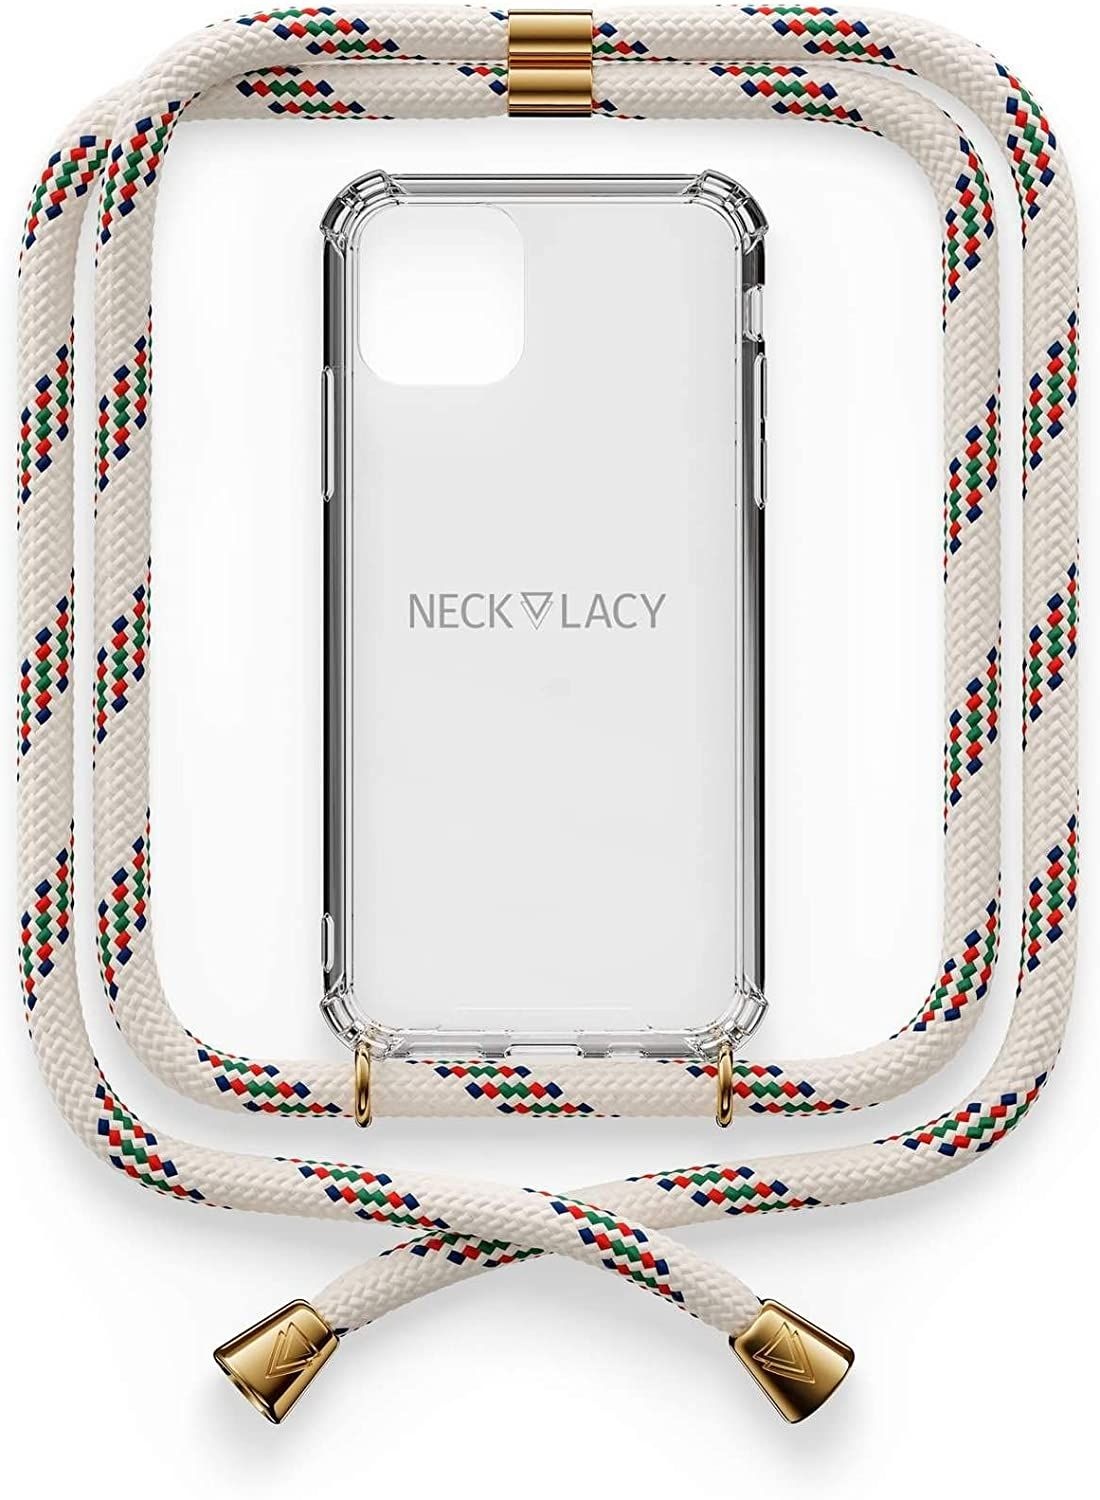 NECKLACY Handykette Handyhülle zum umhängen - für iPhone 11 Pro - Case / Handyhülle mit Band zum umhängen - Trageband Hals mit Kordel - Smartphone Necklace, Classic Birch